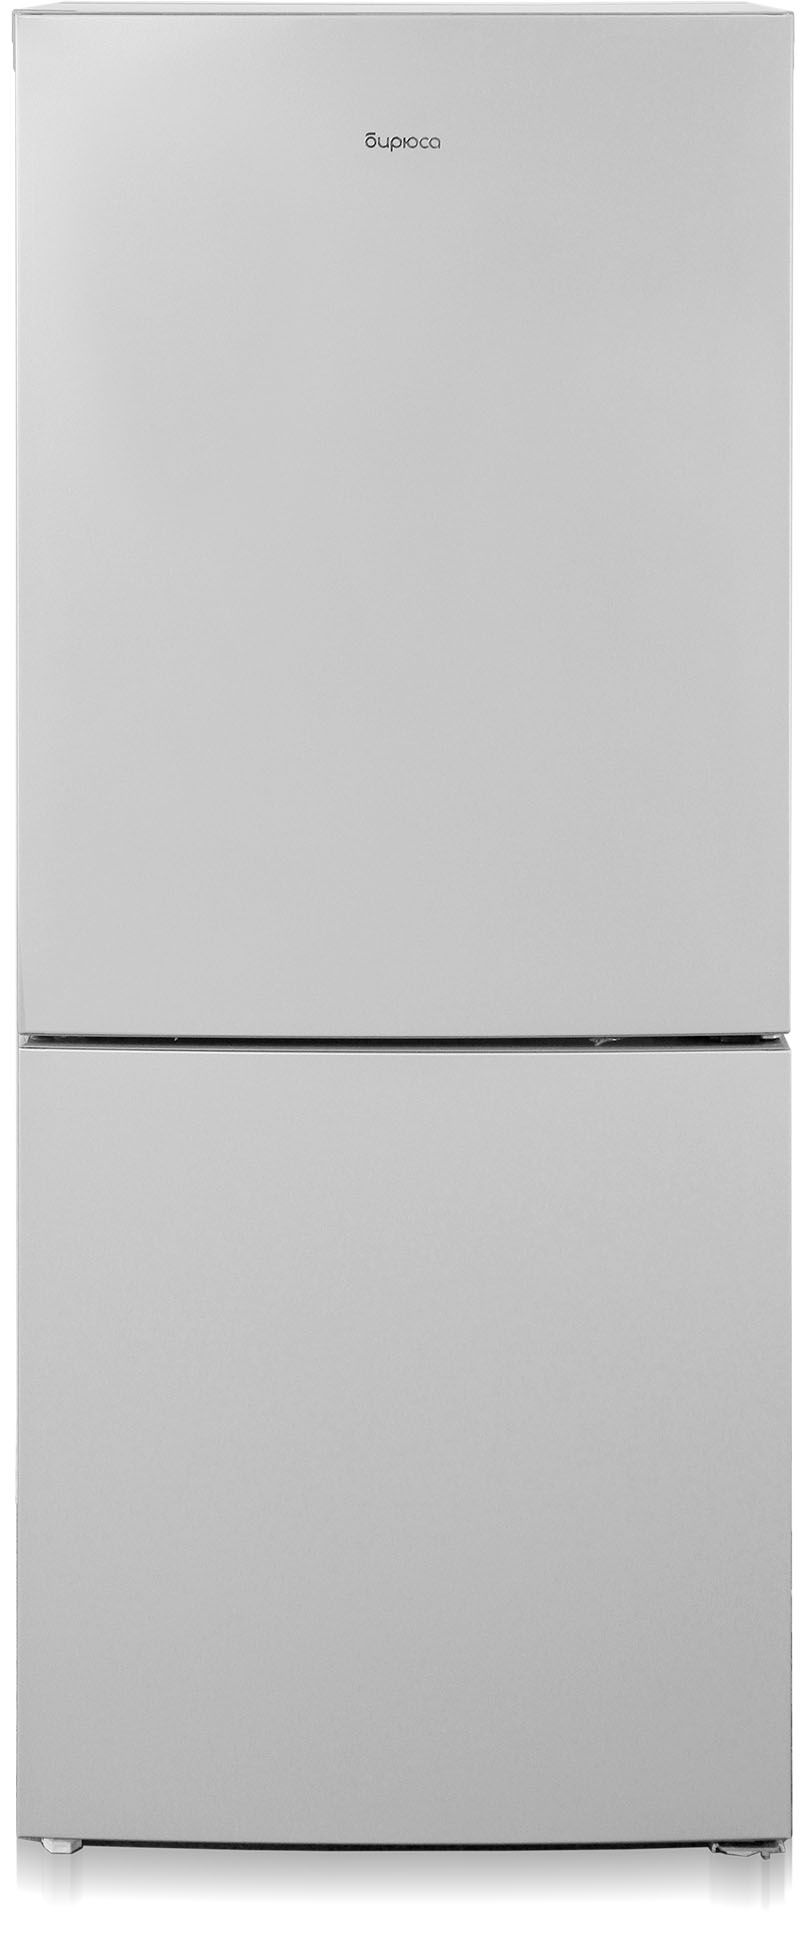 холодильник бирюса 6041, купить в Красноярске холодильник бирюса 6041,  купить в Красноярске дешево холодильник бирюса 6041, купить в Красноярске минимальной цене холодильник бирюса 6041